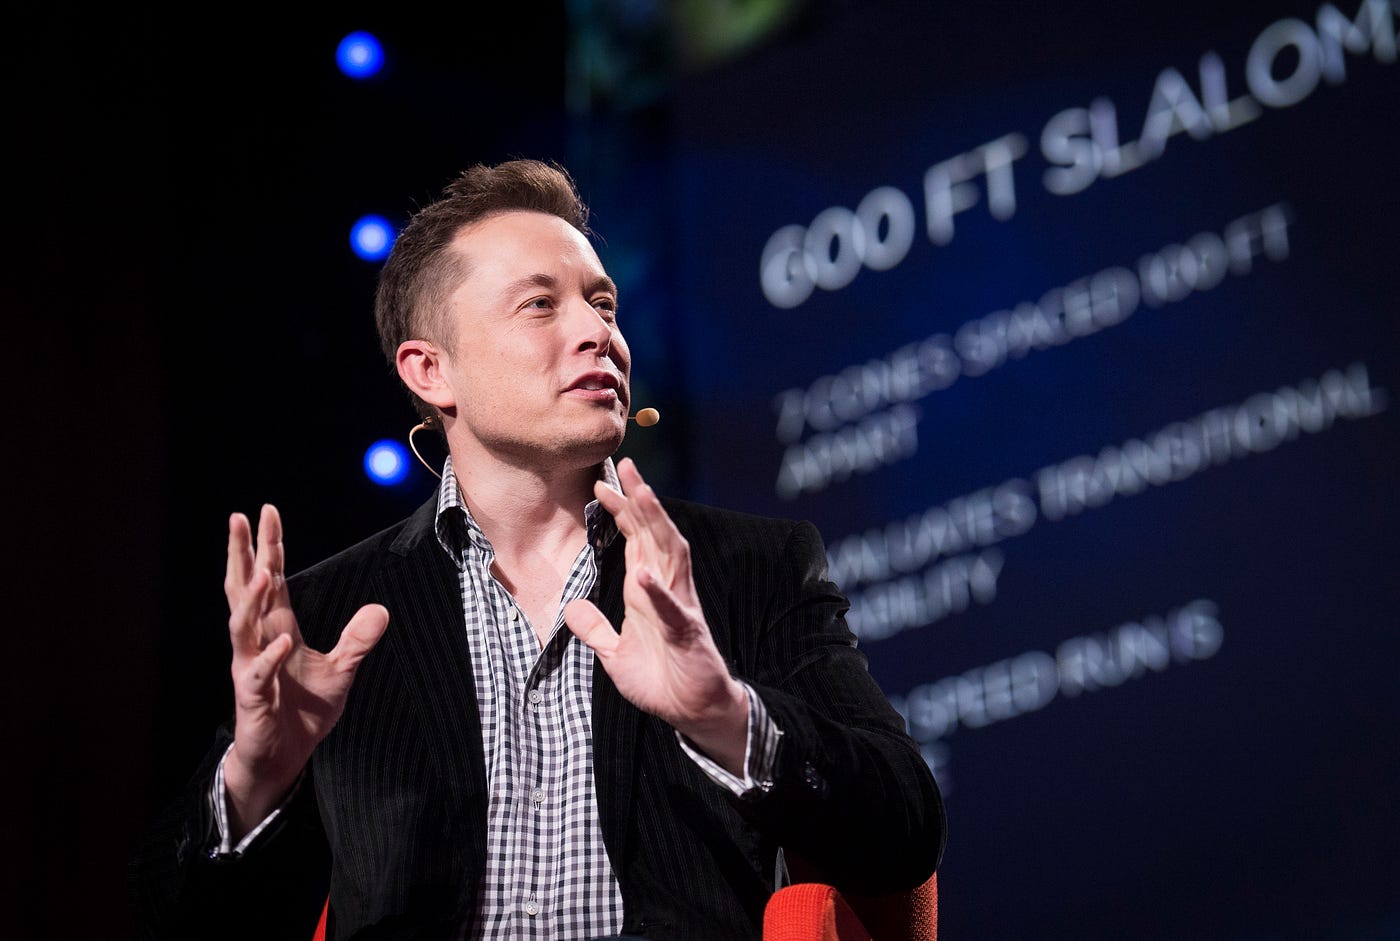 Elon Musk, Twitter's owner